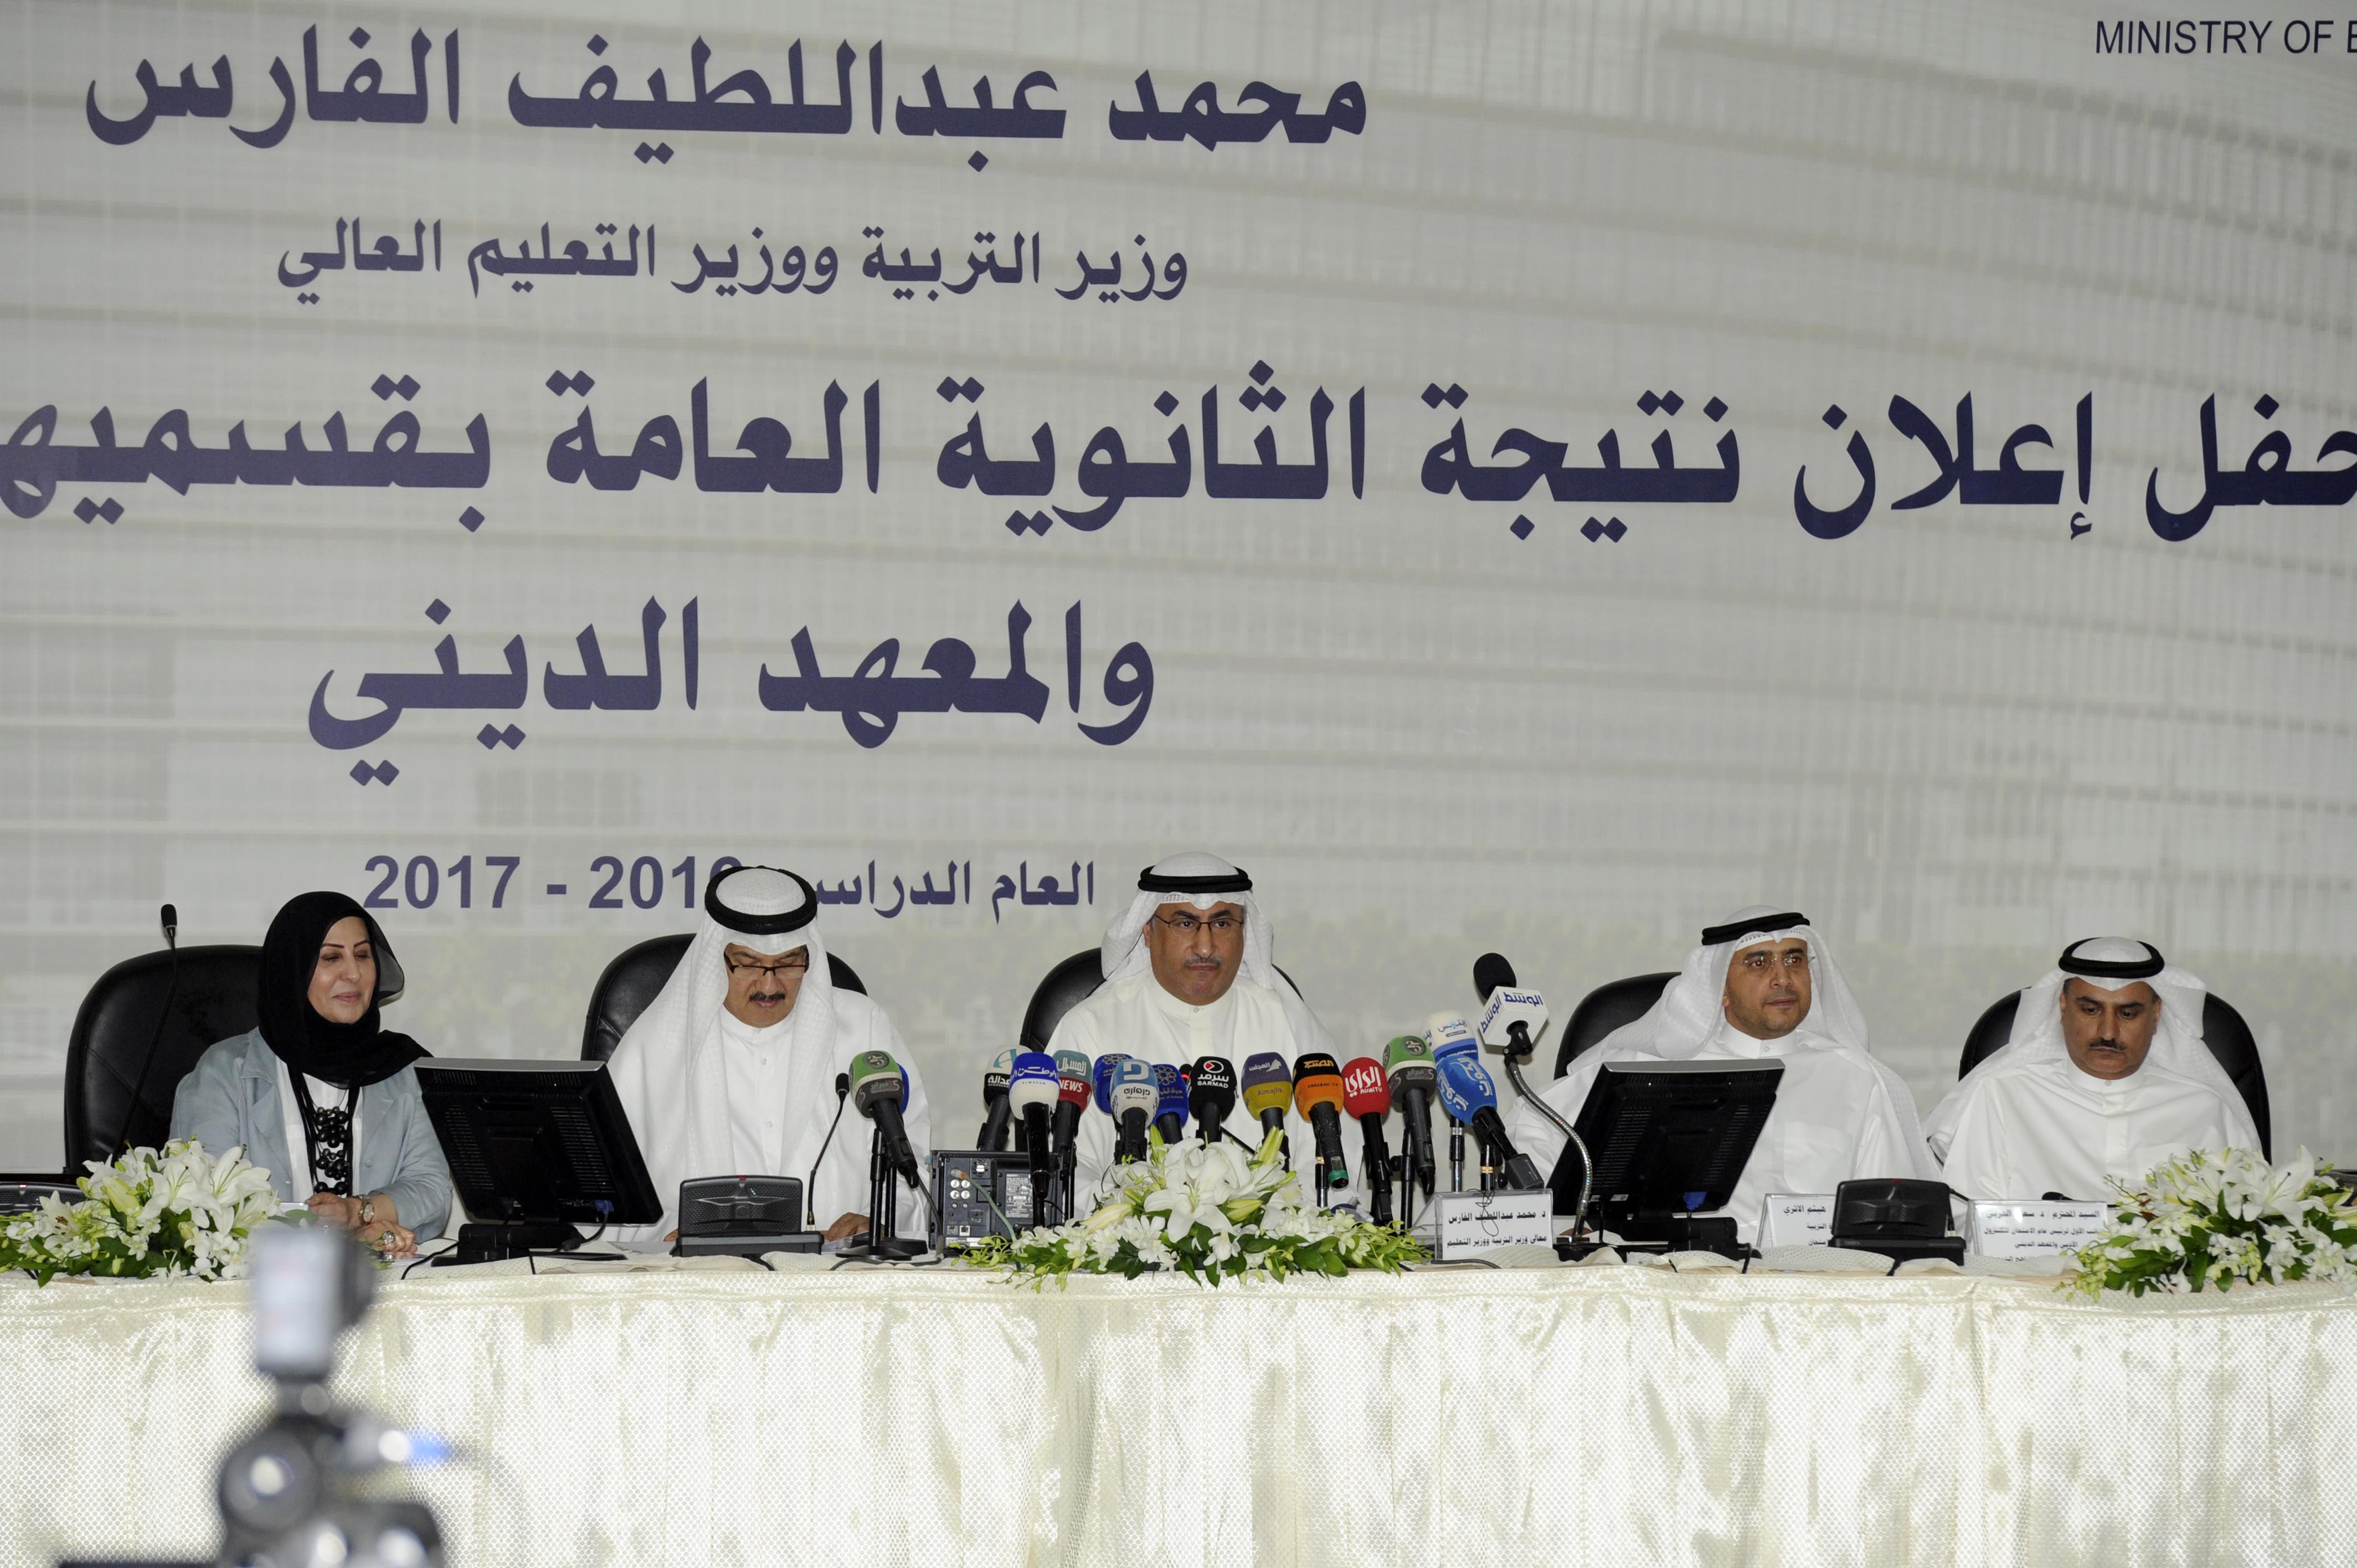 وزير التربية الكويتي يعلن نتائج الثانوية العامة للعام الدراسي 2016/2017